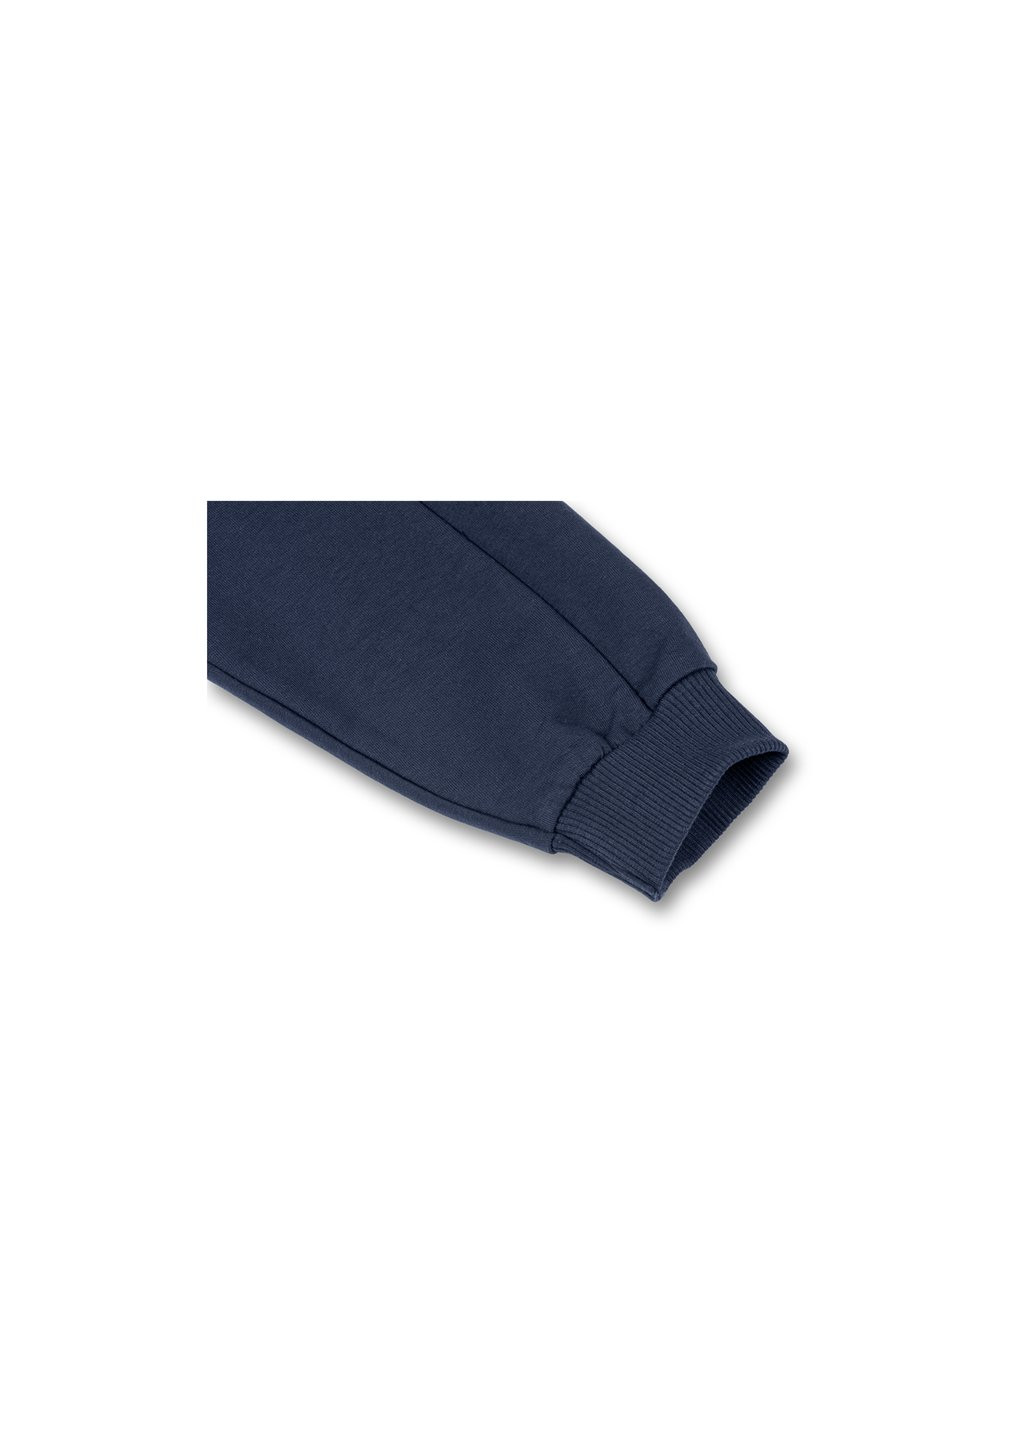 Голубой демисезонный набор детской одежды кофта и брюки голубой " brooklyn" (7882-98b-blue) Breeze